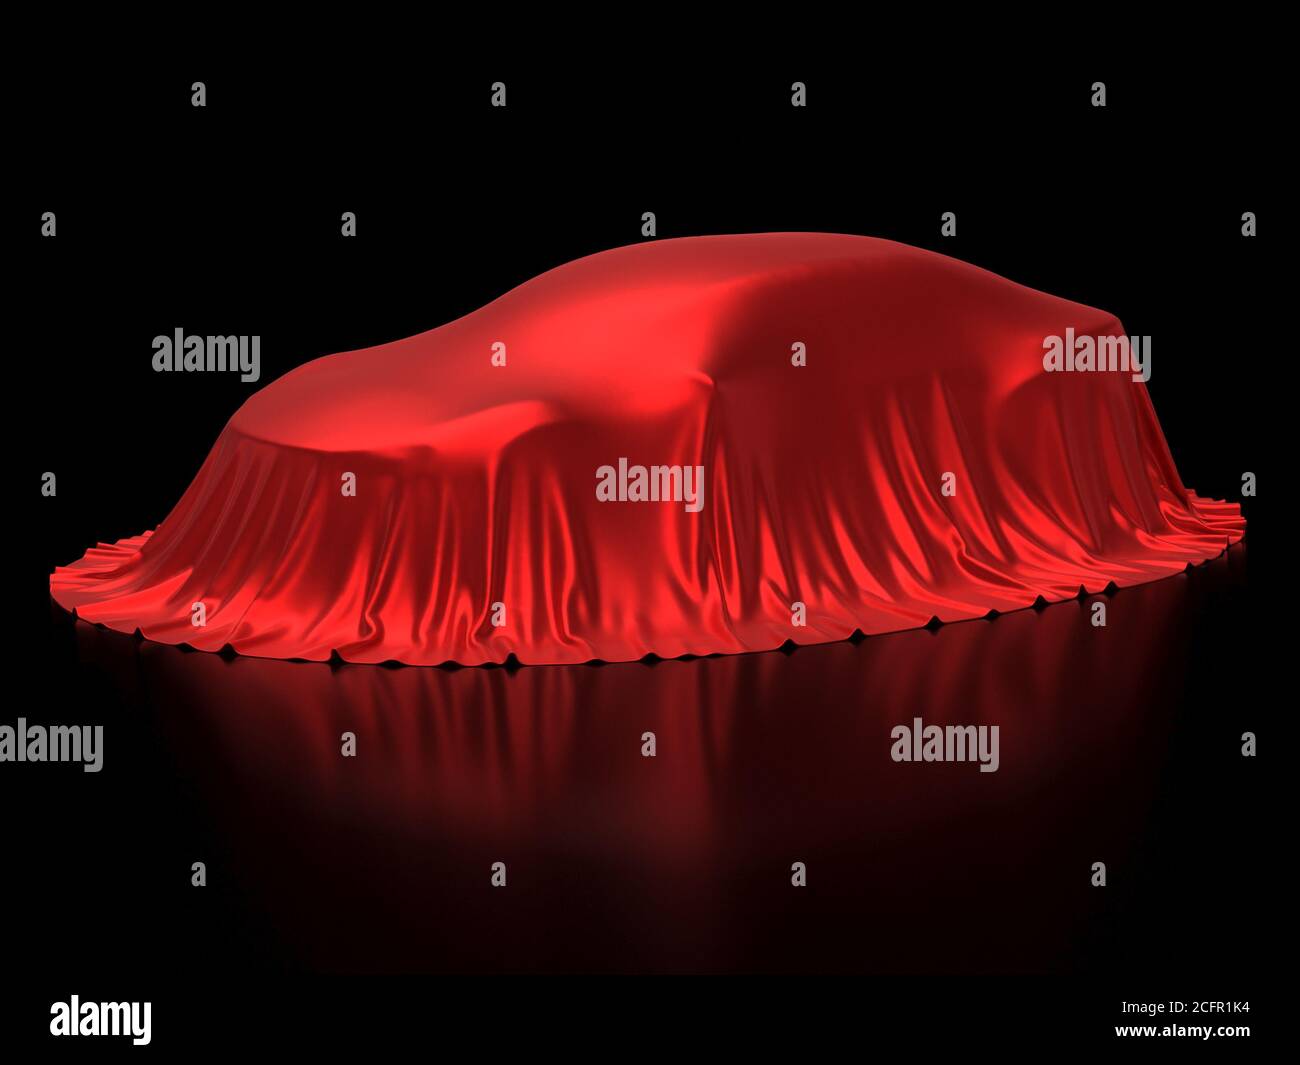 Présentation de la nouvelle voiture, présentation du modèle, caché sous une couverture rouge, isolé sur fond noir, rendu 3d Banque D'Images